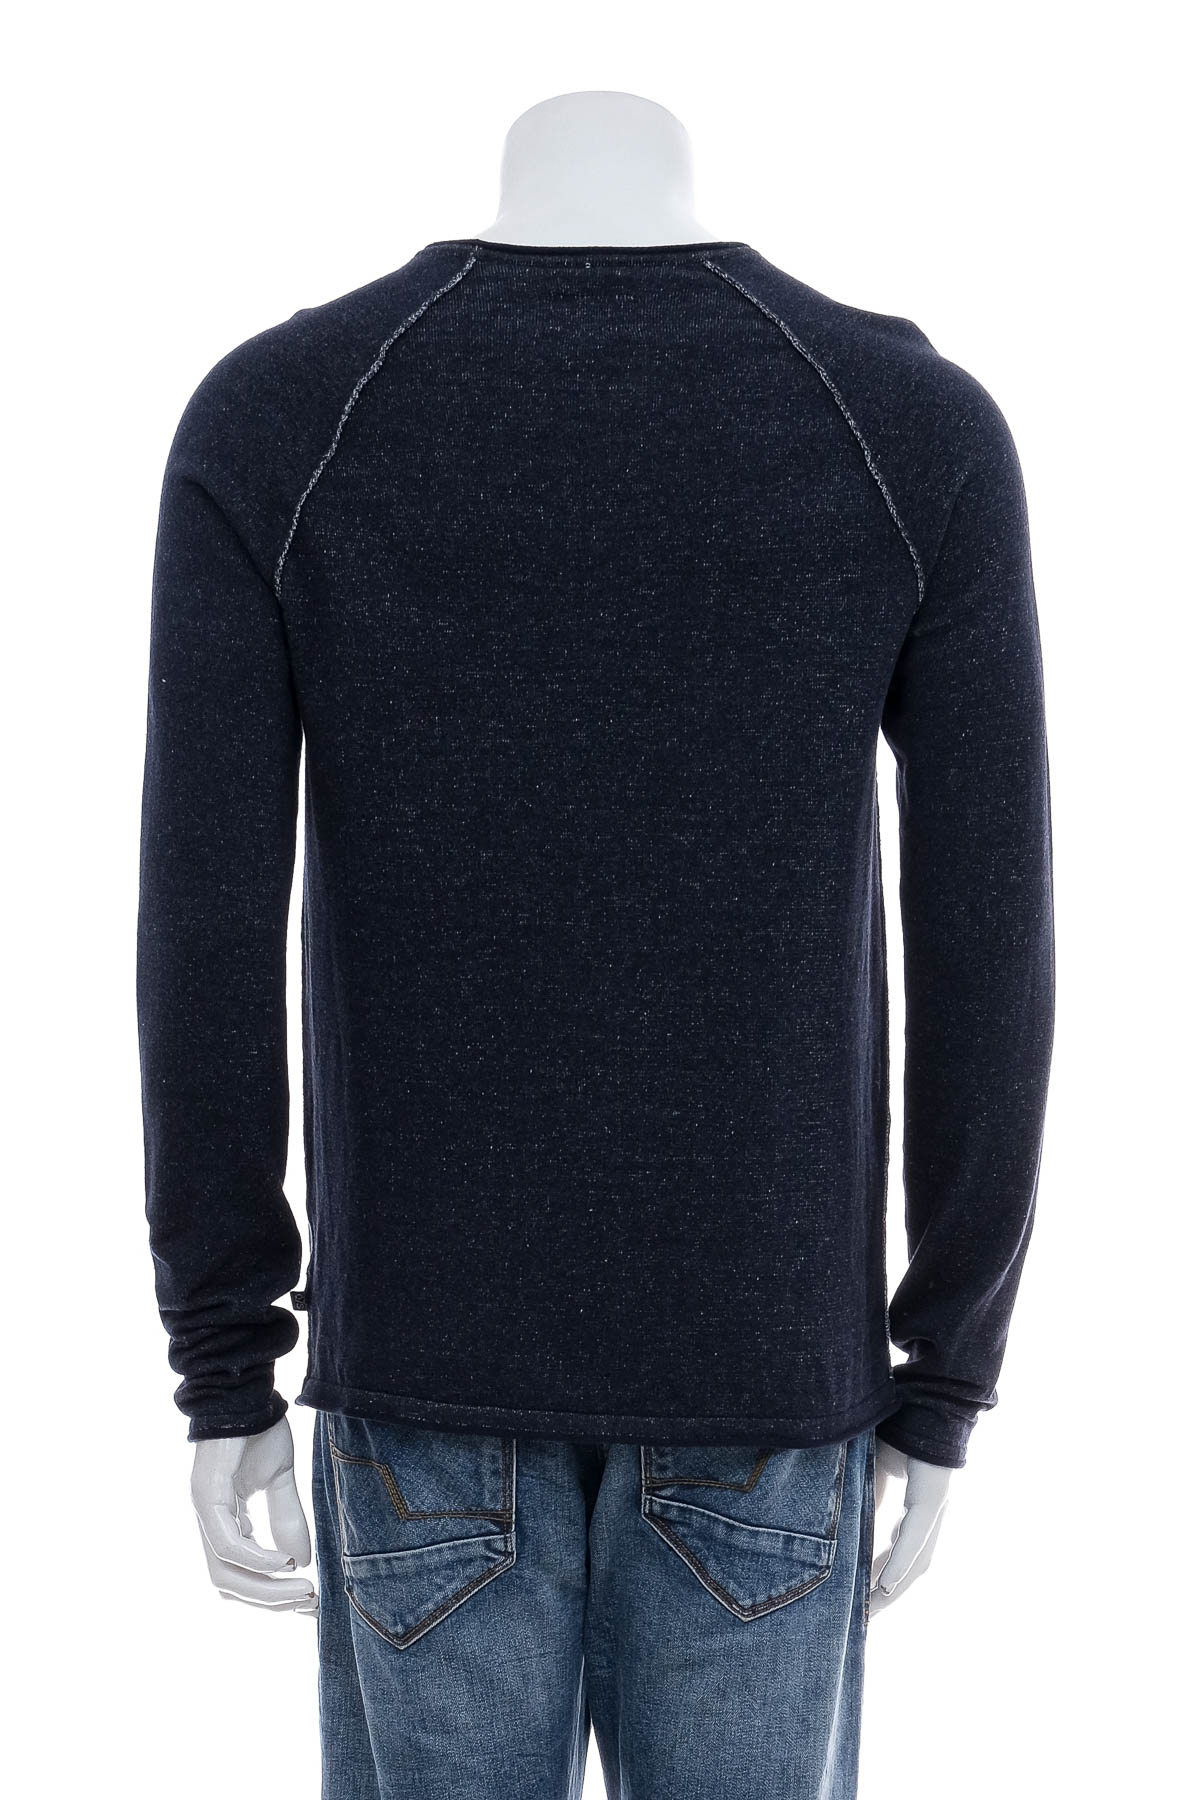 Men's sweater - Q/S - 1